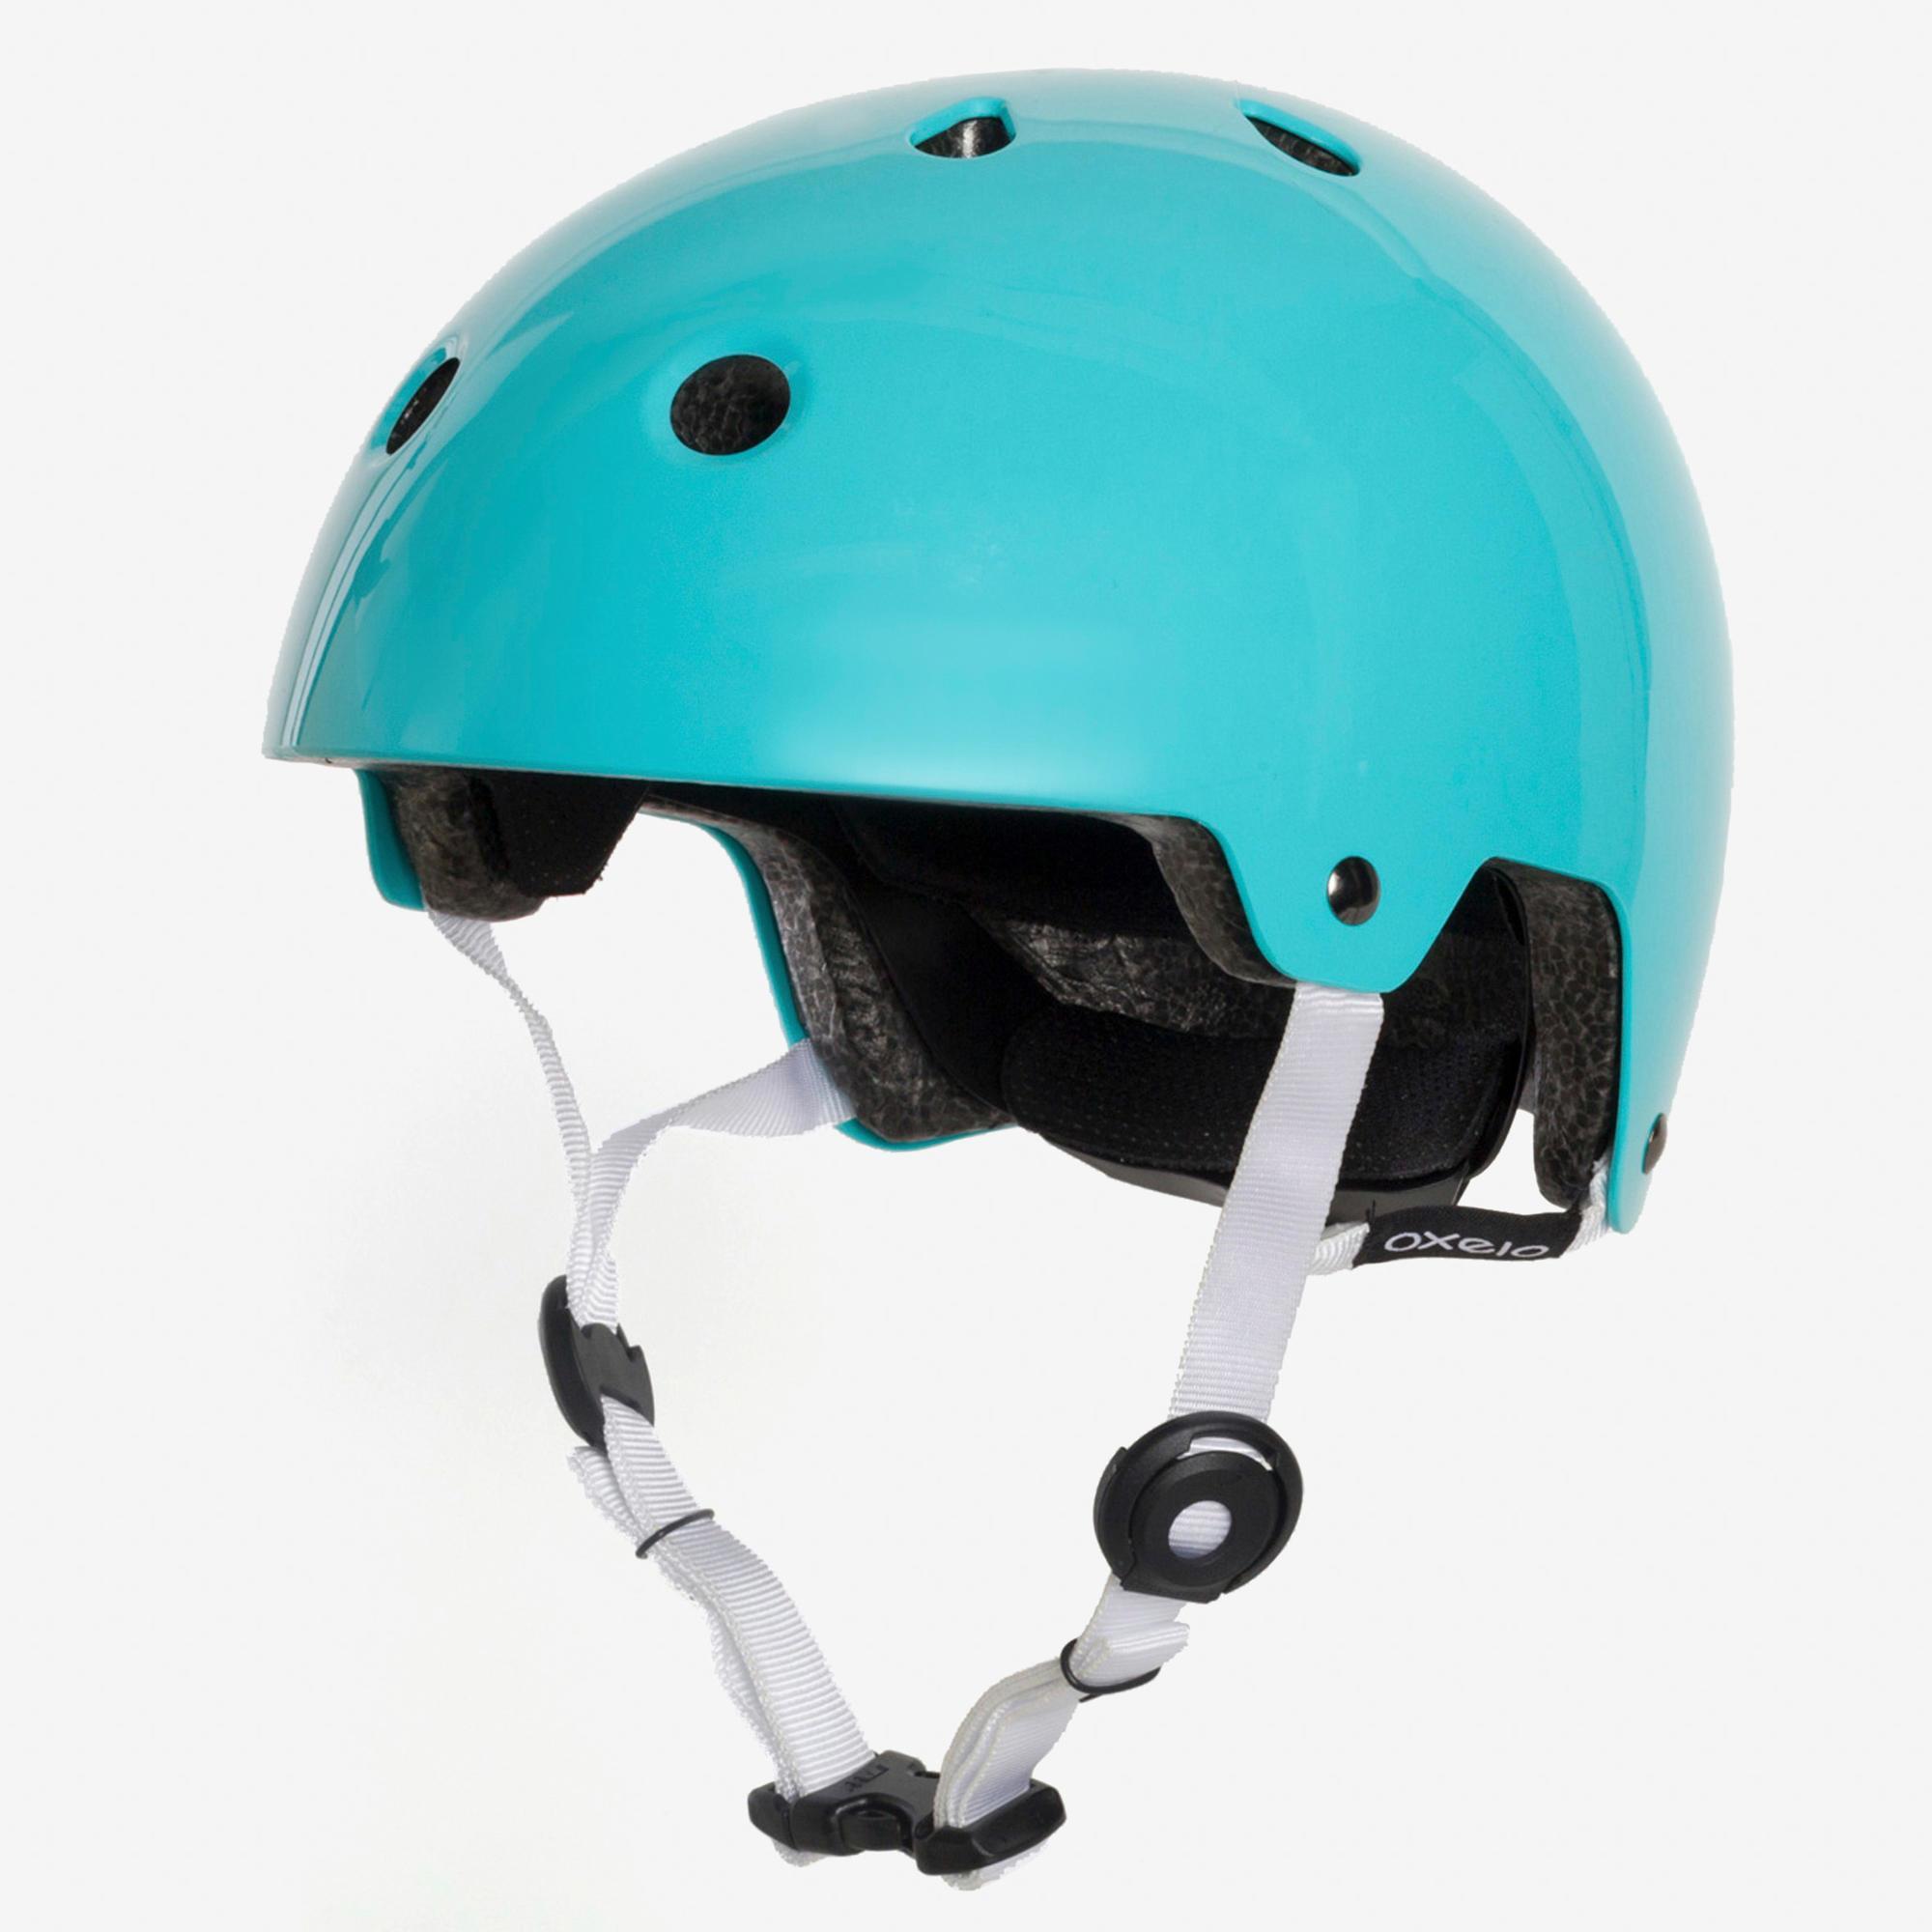 decathlon scooter helmet